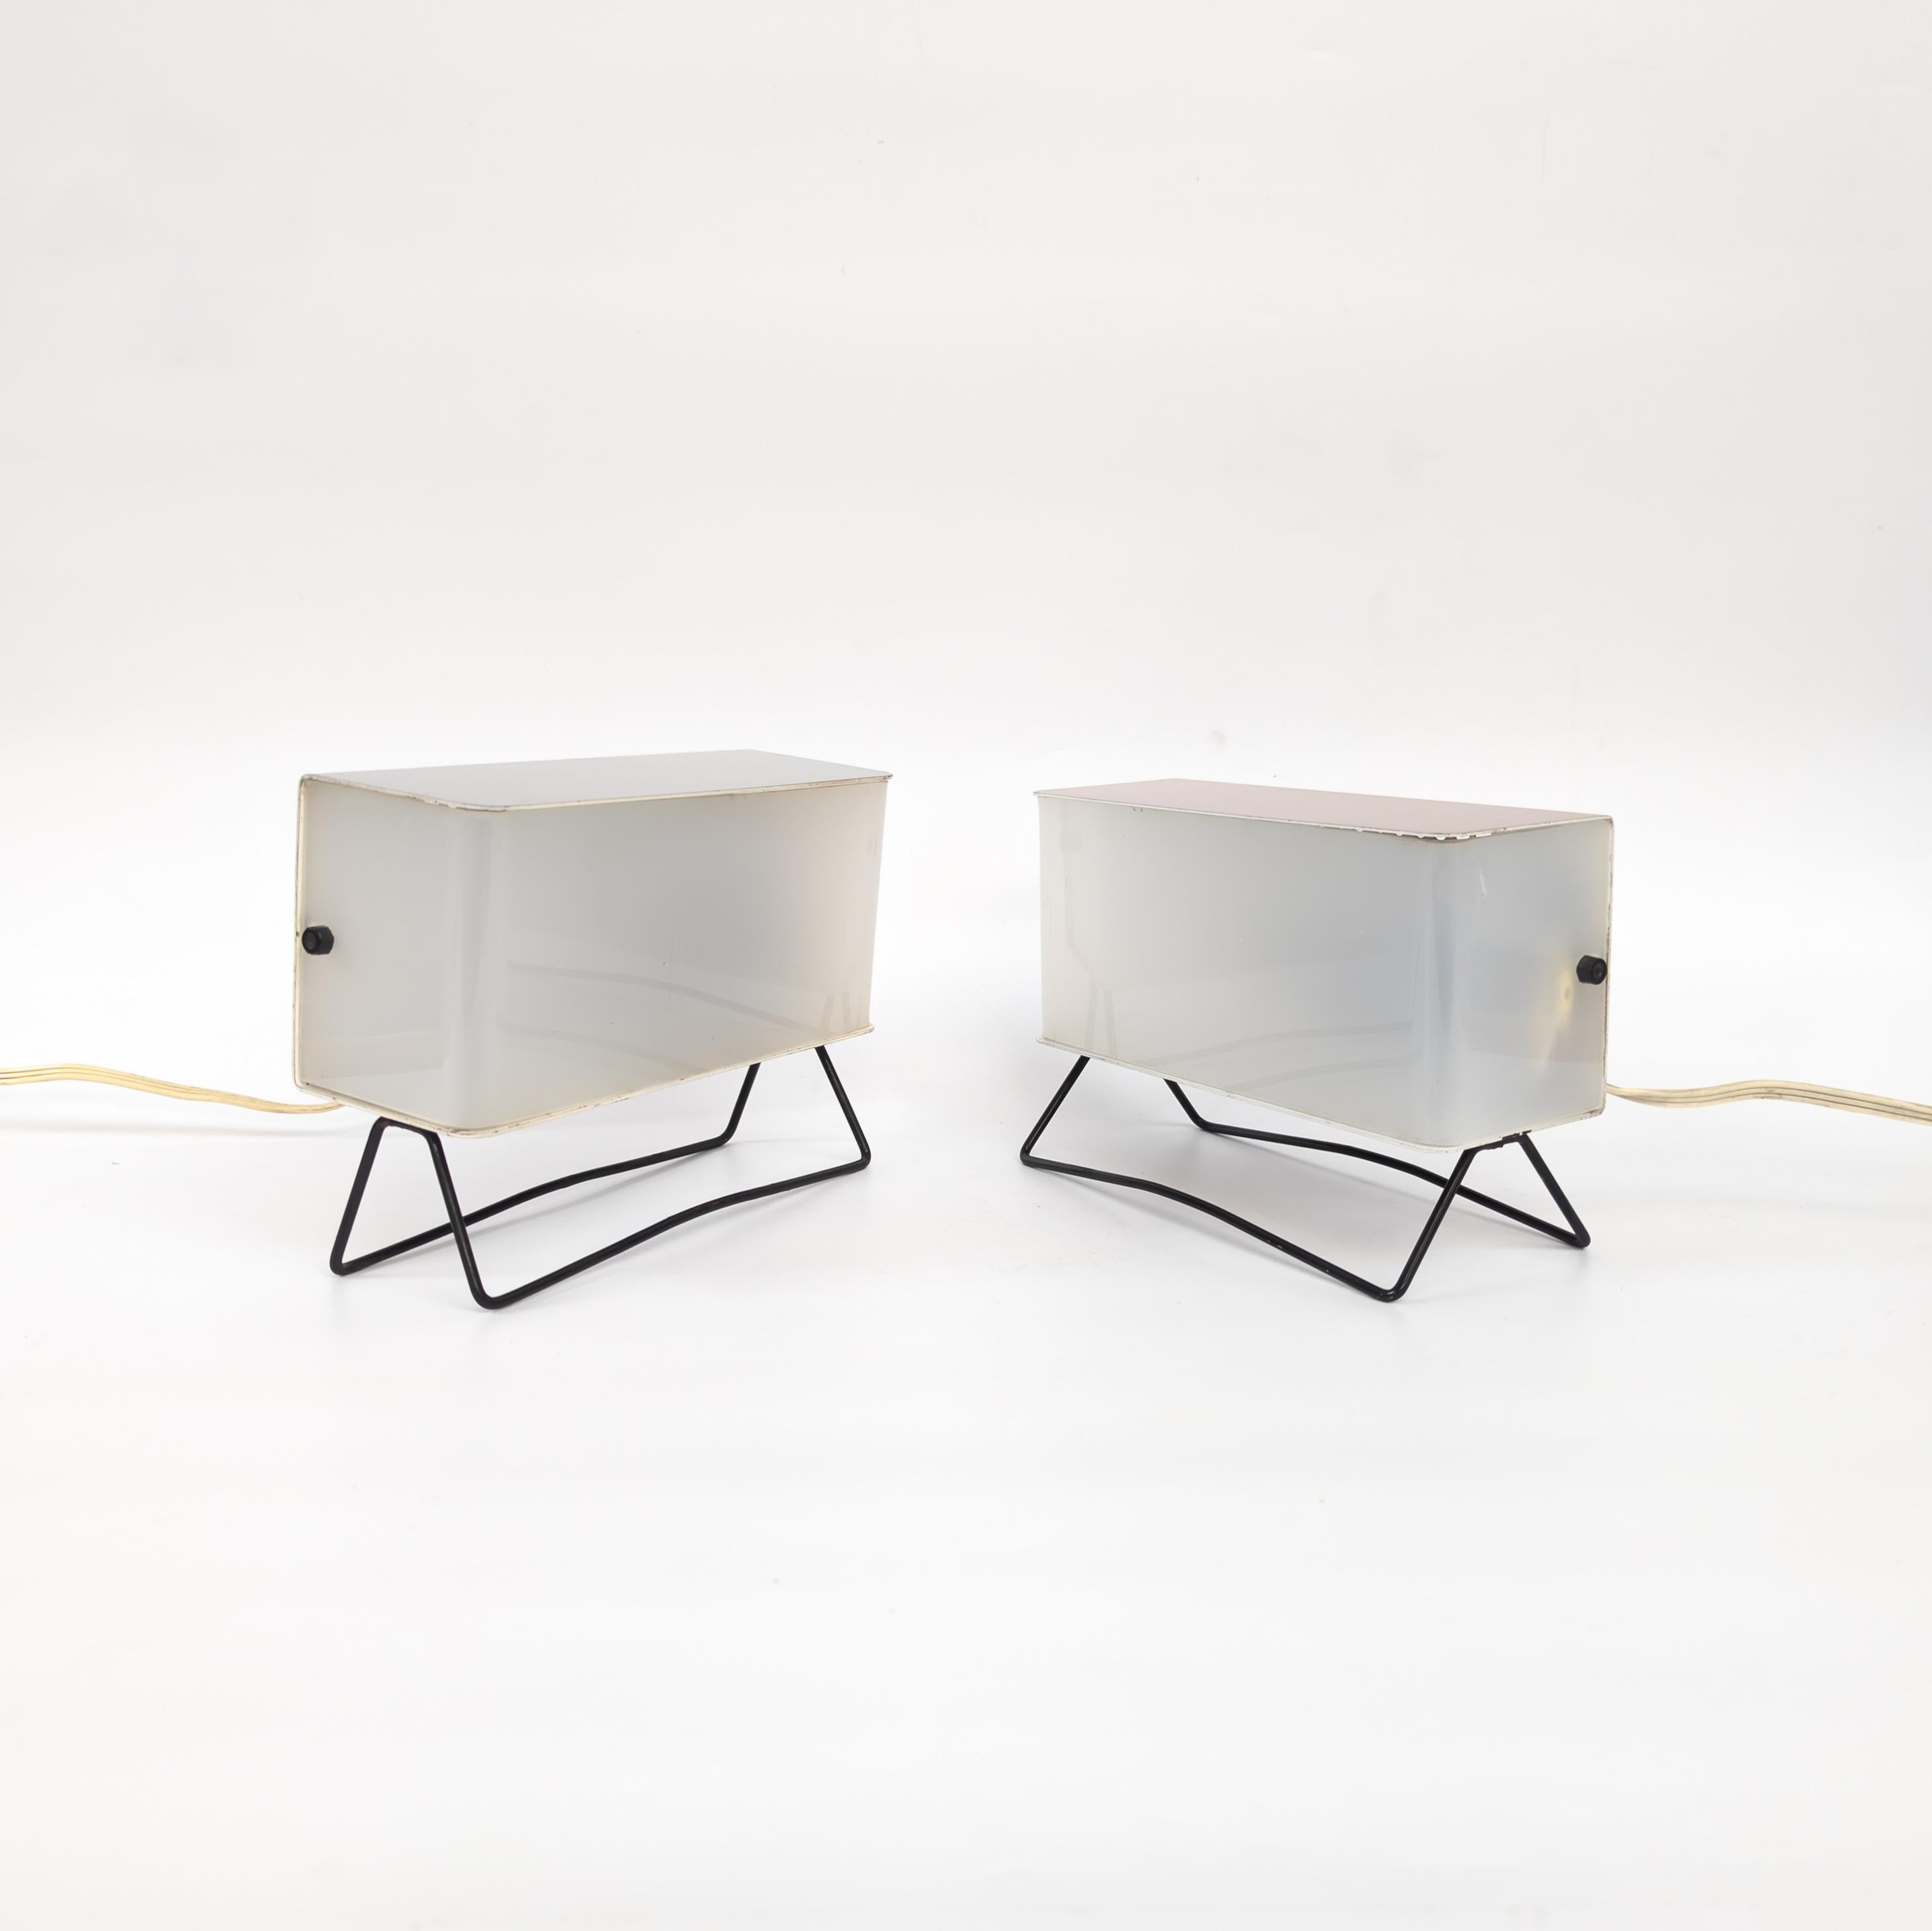 Lampes de table uniques fabriquées par Pokrok Žilina, ancienne Tchécoslovaquie, dans les années 1960. Fabriqué en métal laqué et en plexiglas. En très bel état d'origine avec quelques traces mineures d'usure et d'âge. Dimensions : hauteur 16 cm,